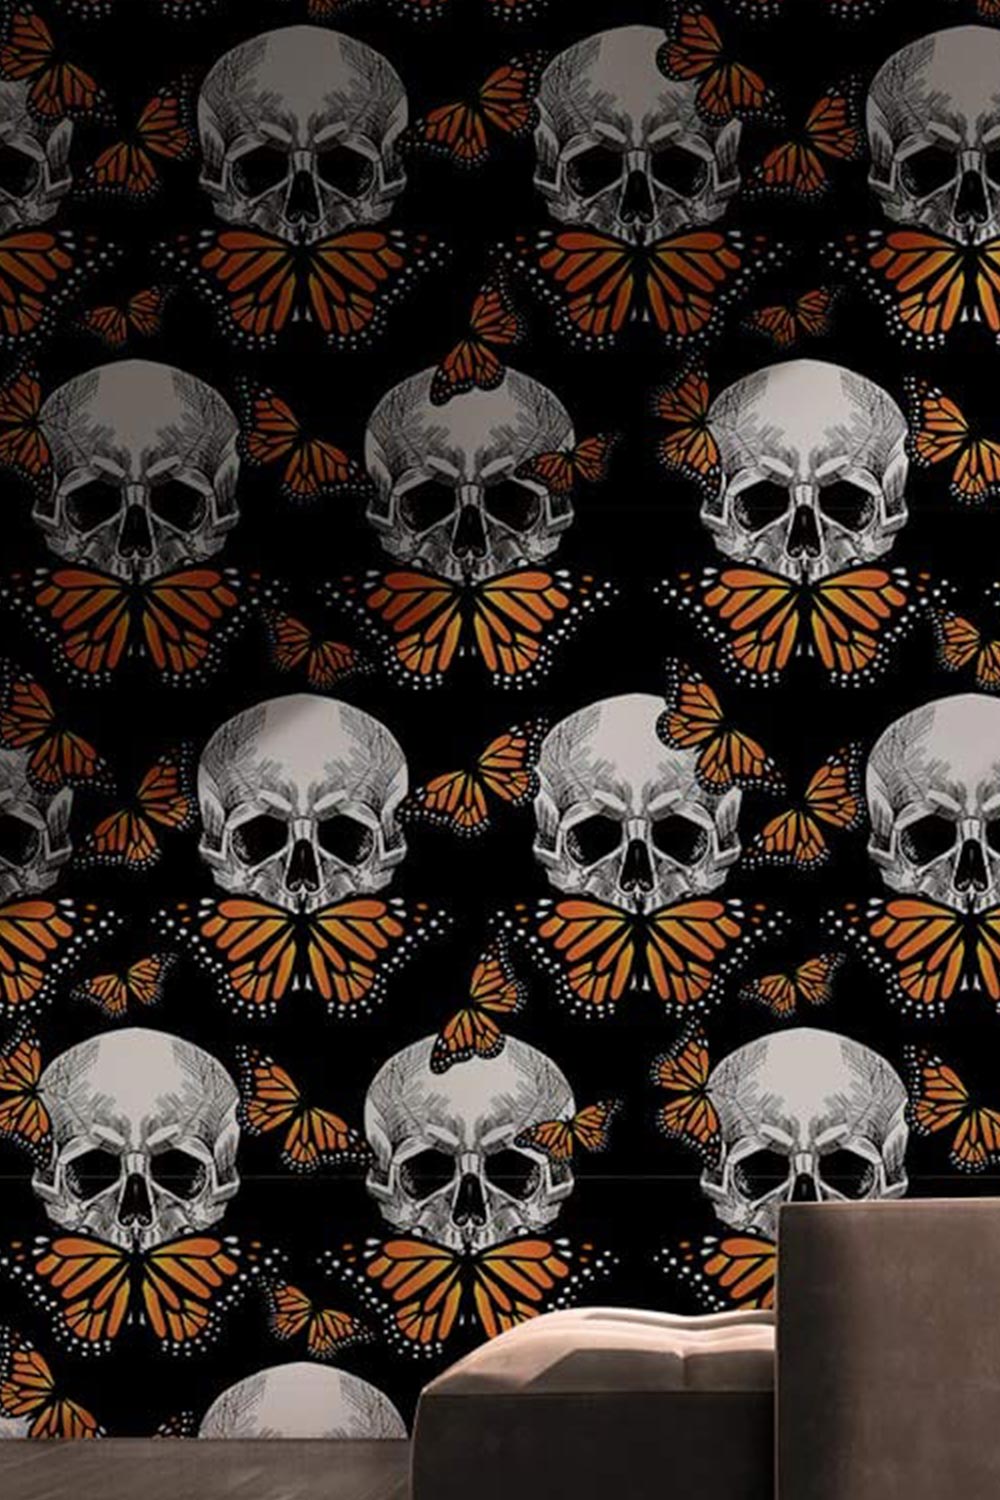 49+] Skull Wallpaper for iPhone - WallpaperSafari